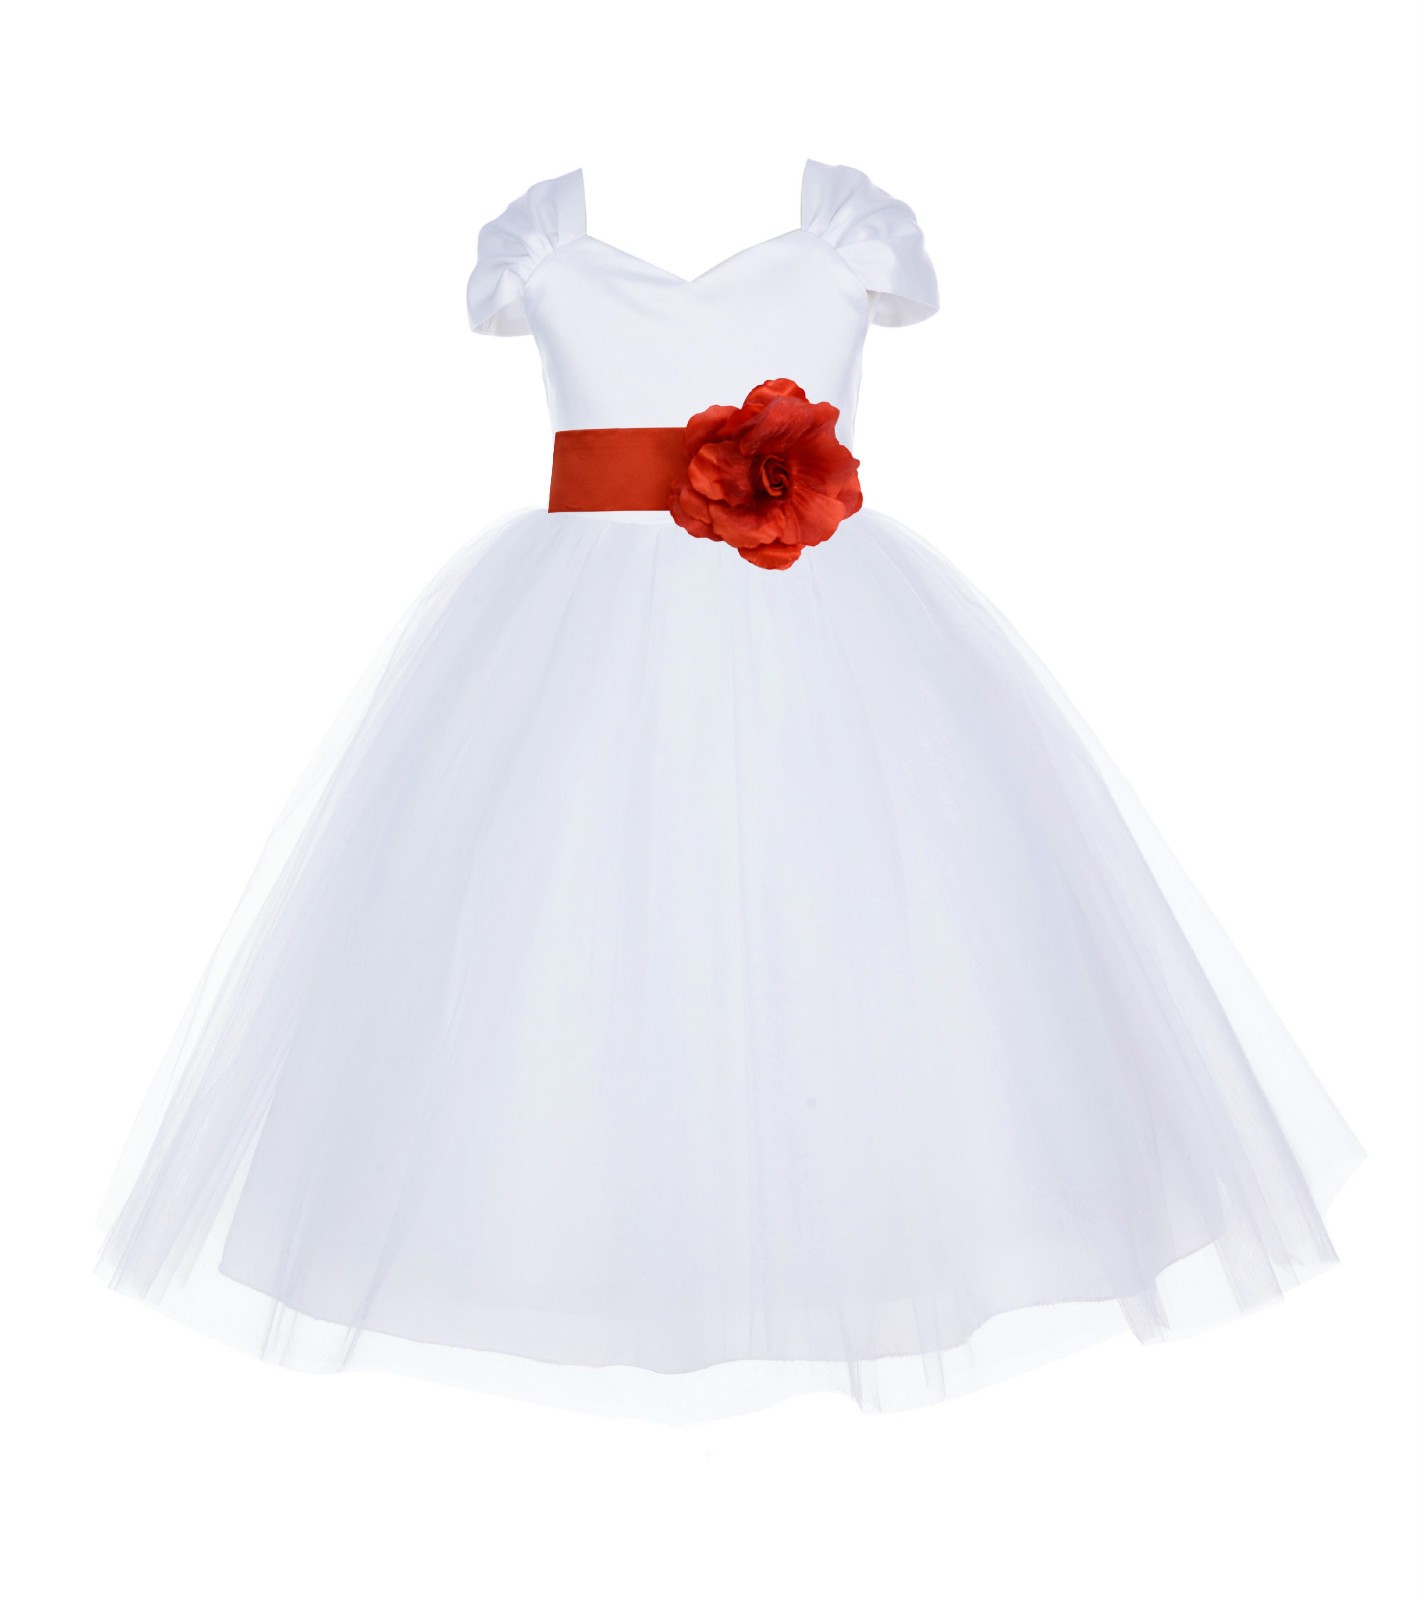 White/Persimmon V-shaped Neckline Short Sleeves Tulle Flower Girl Dress 154S